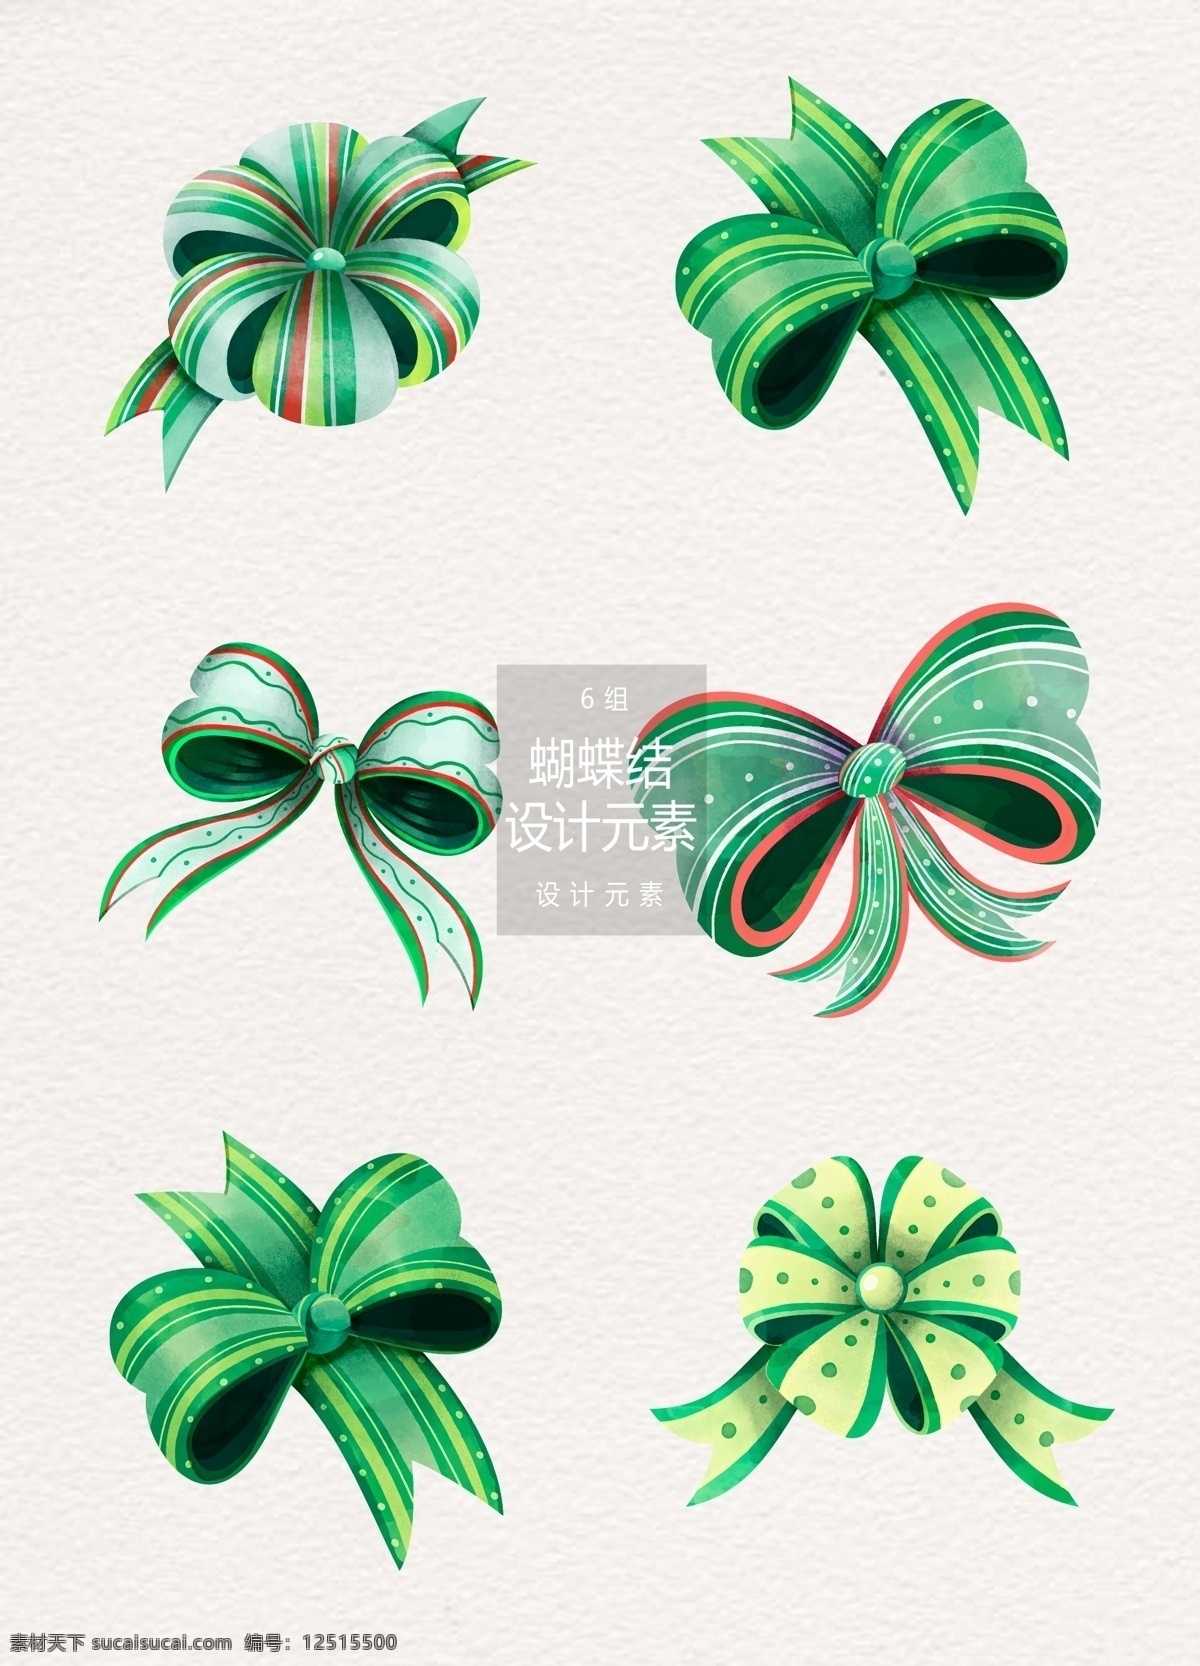 水彩 手绘 绿色 蝴蝶结 元素 设计元素 手绘蝴蝶结 丝带 绿色丝带 绿色蝴蝶结